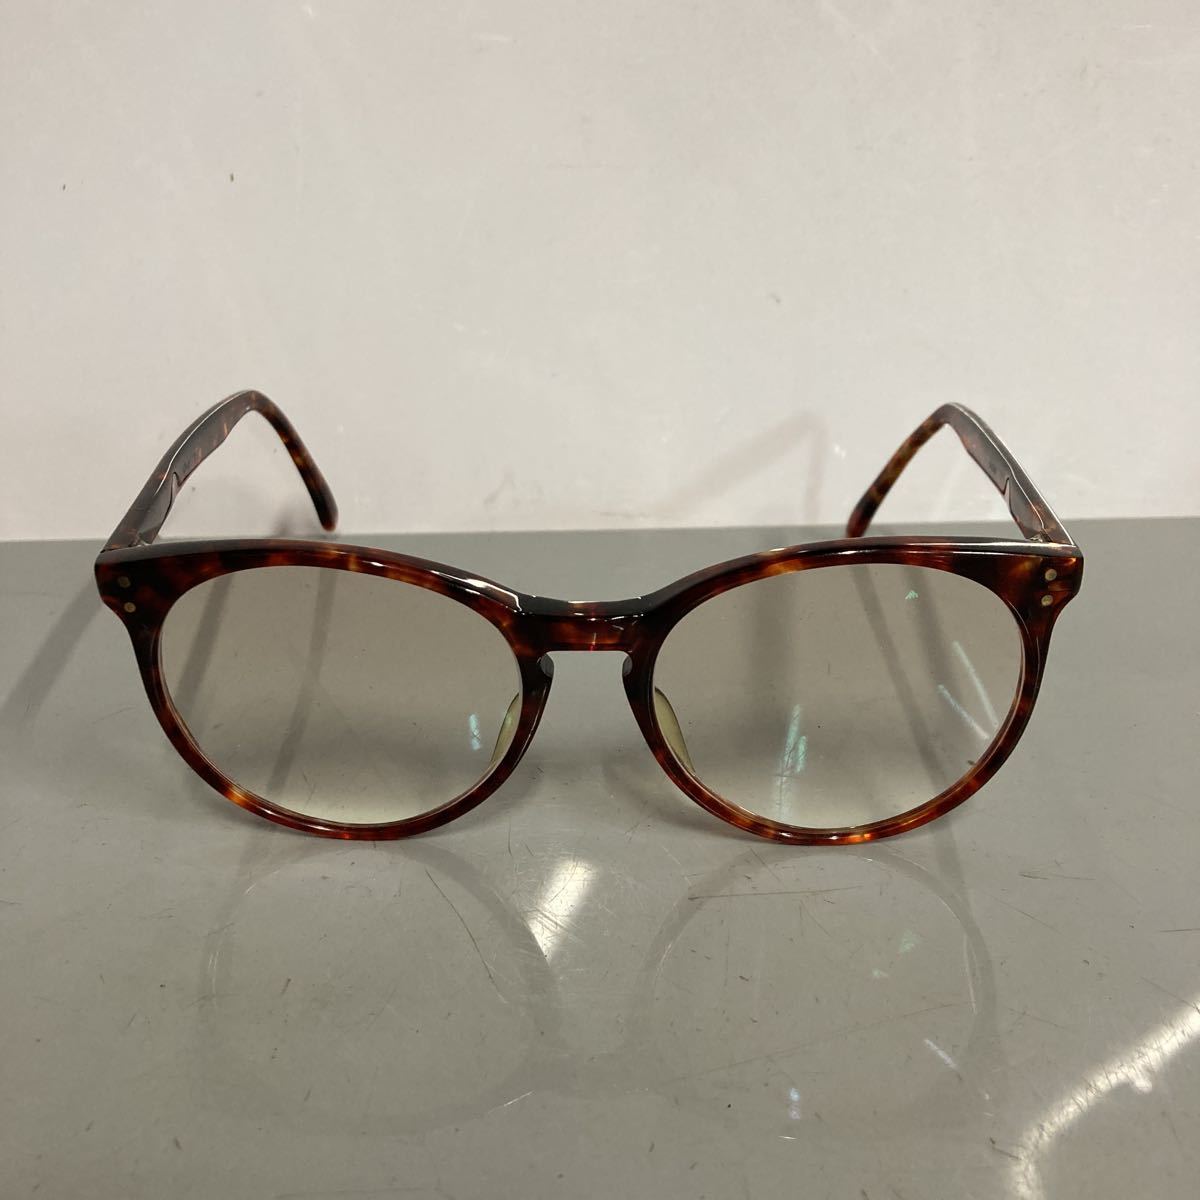 1494円 百貨店 メガネ 度付き 度なし おしゃれ 乱視対応 サングラス 眼鏡 フレーム ナイロール CROSS T CT5002